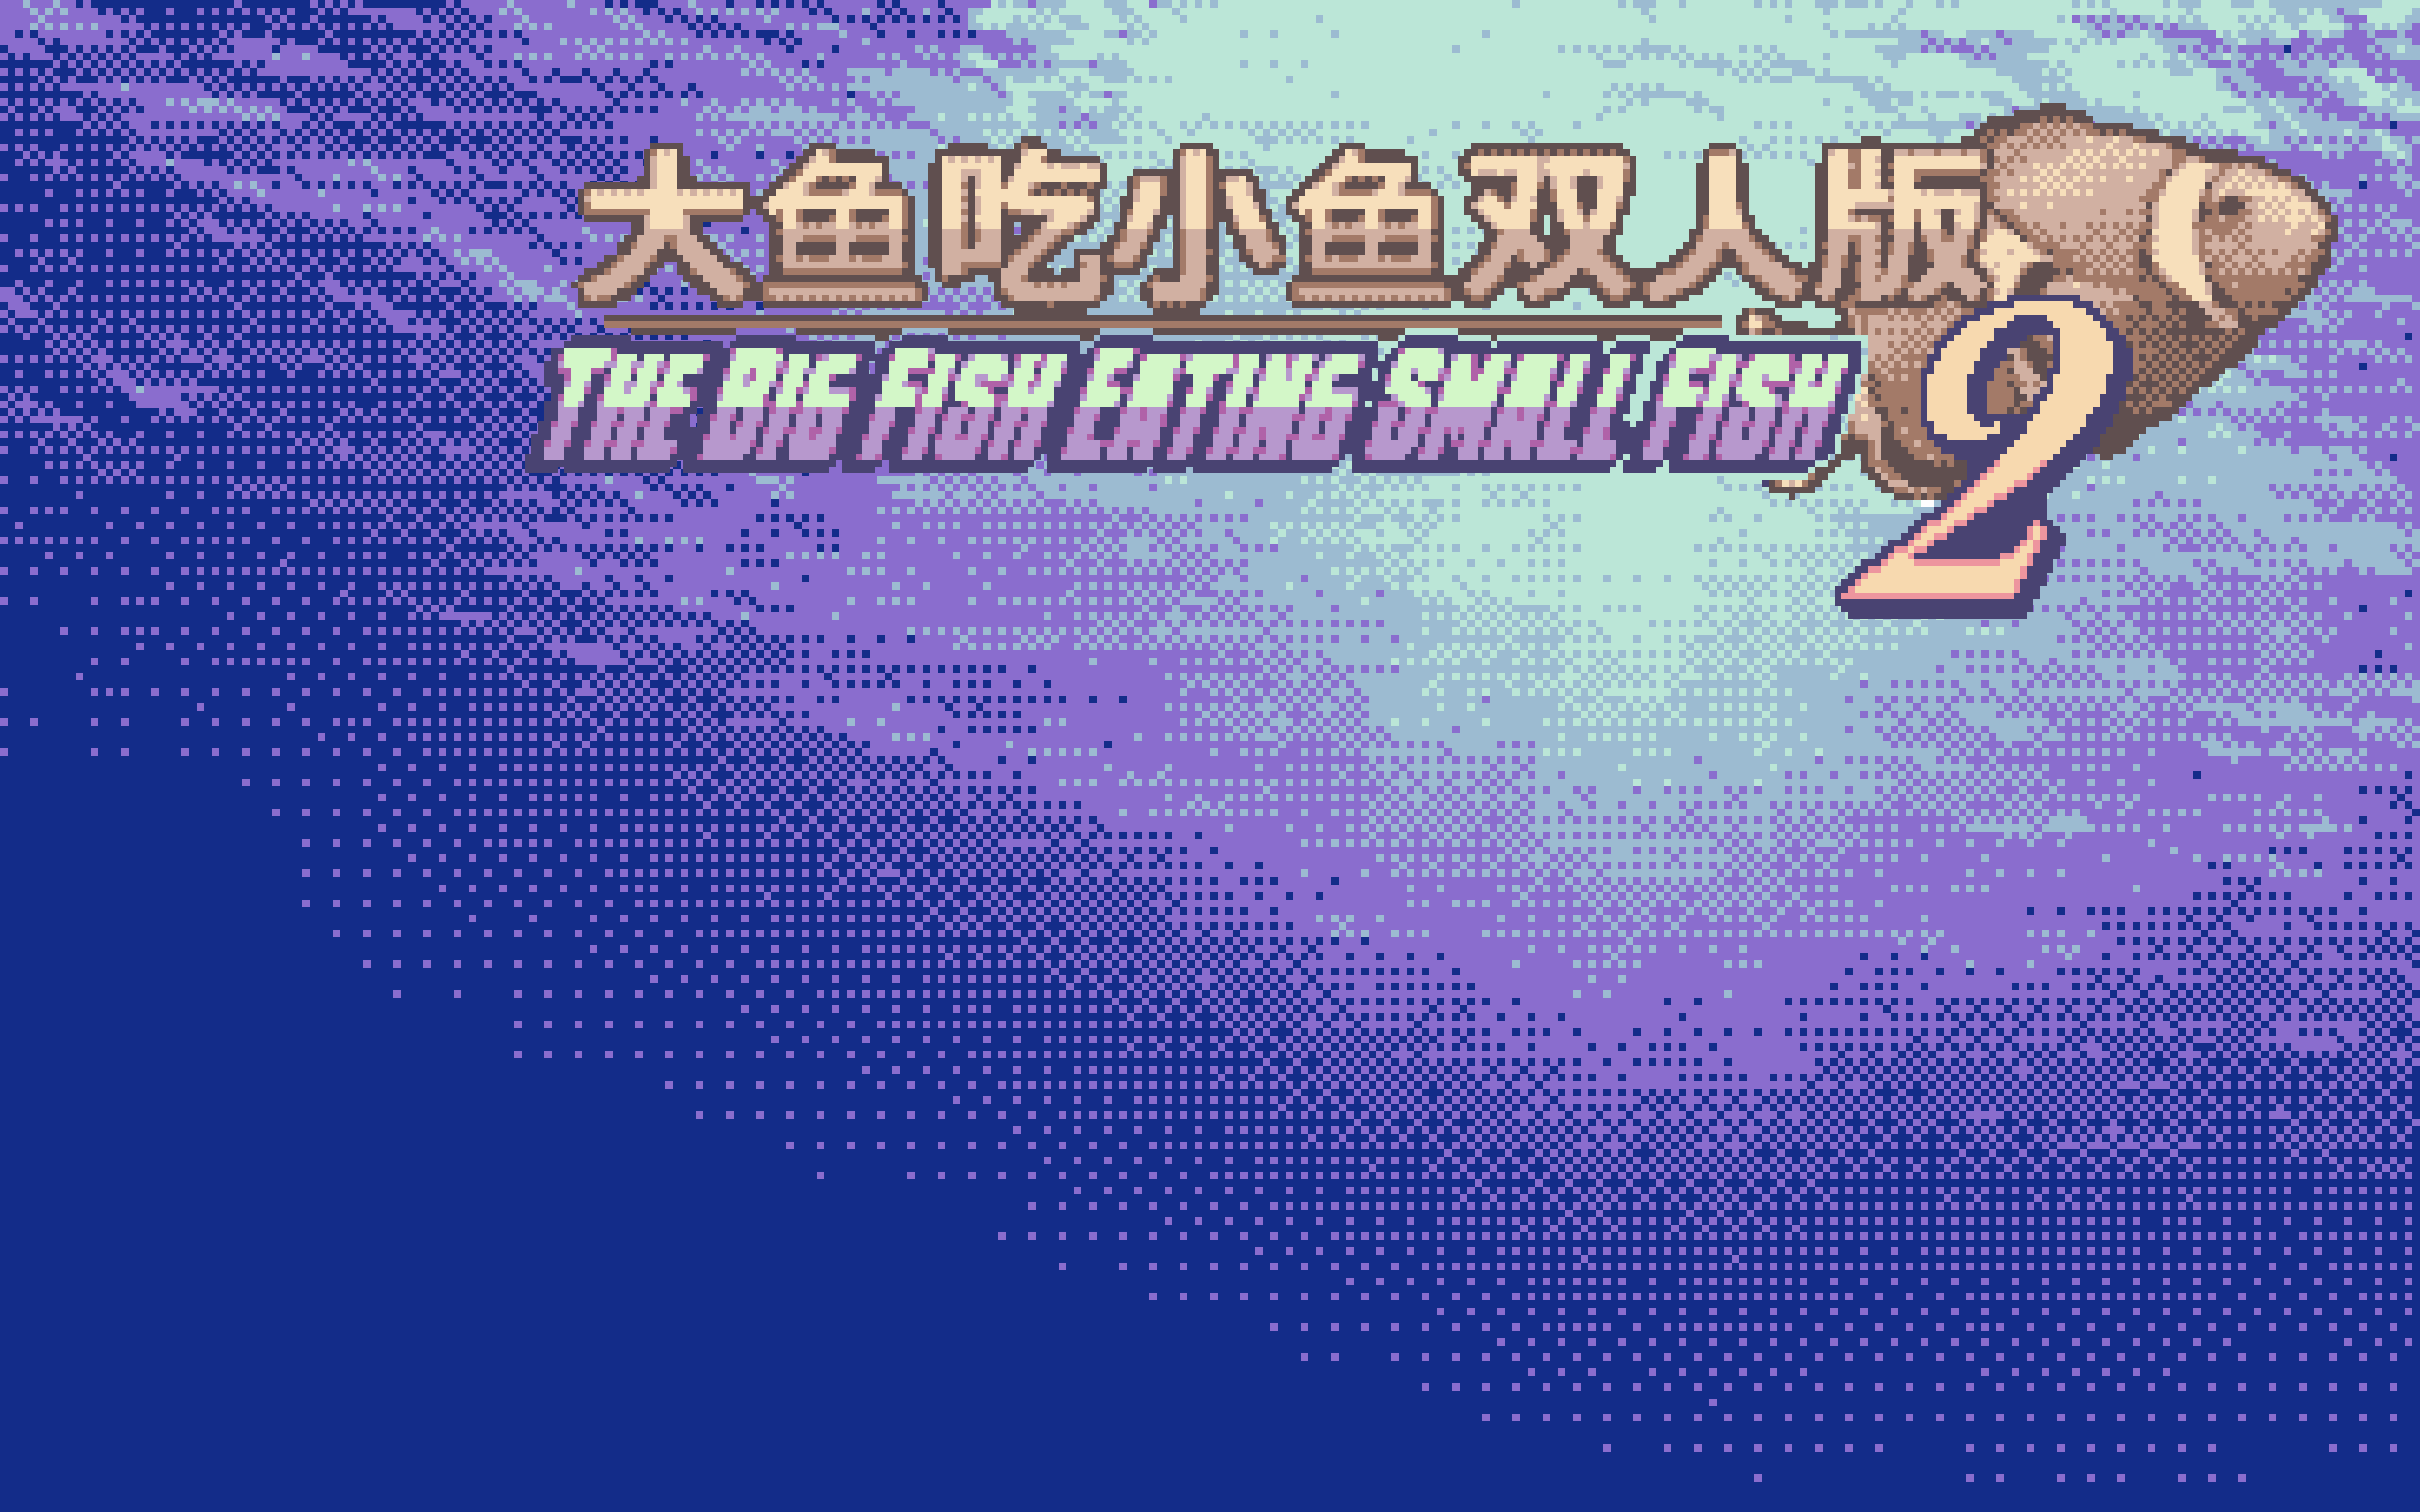 The Big Fish Eating Small Fish 2